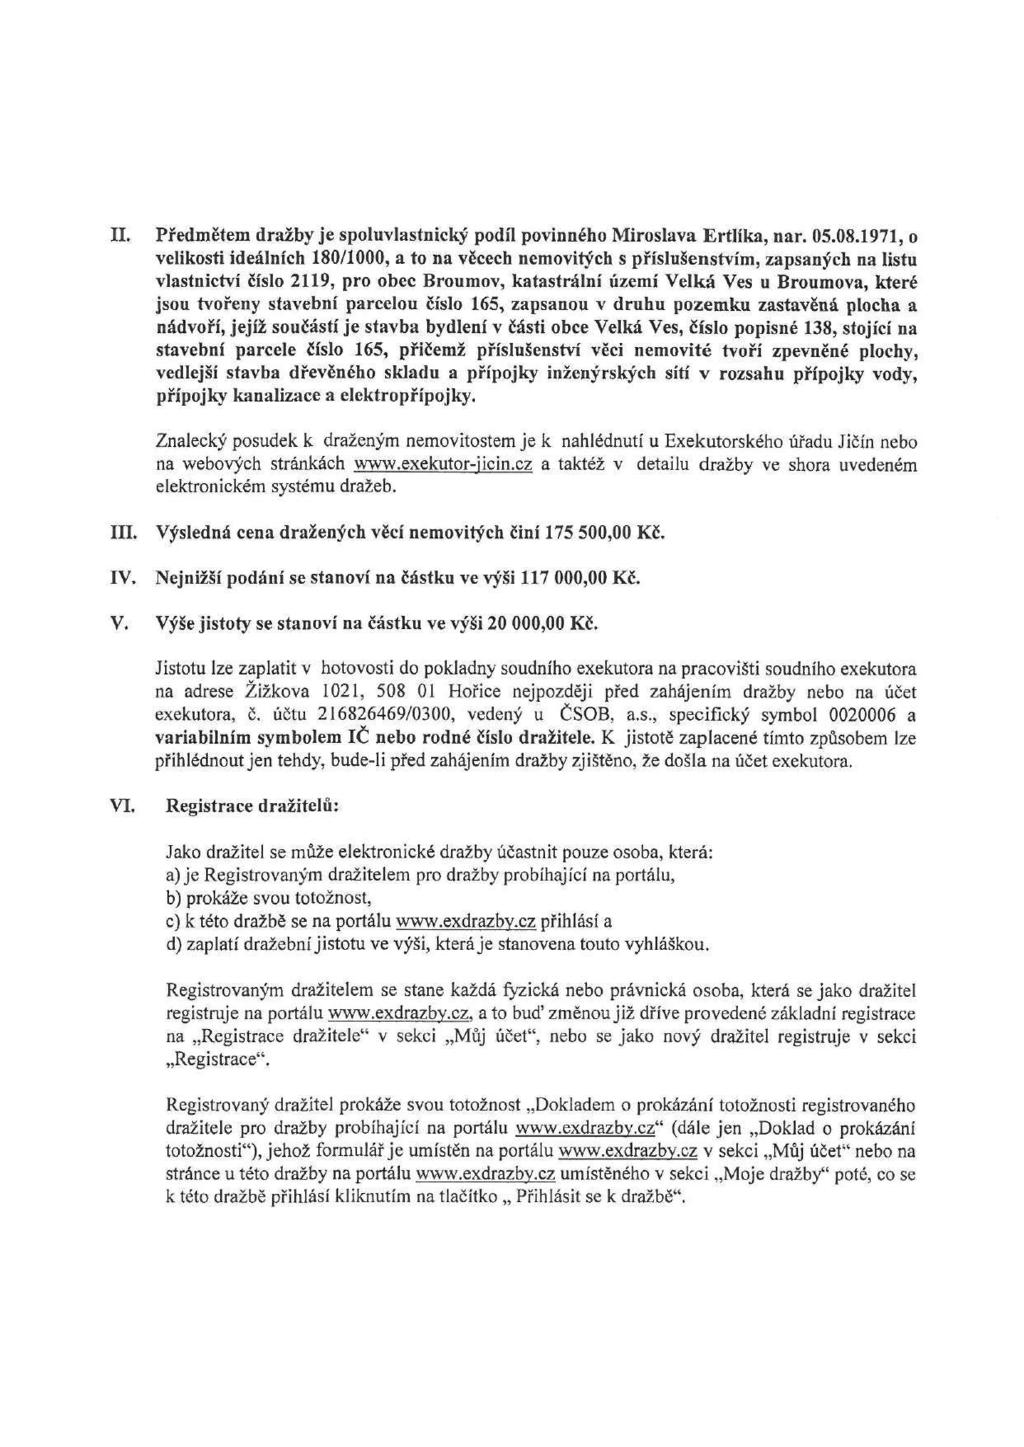 II. Předmětem dražby je spoluvlastnický podíl povinného Miroslava Ertlíka, nar. 05.08.